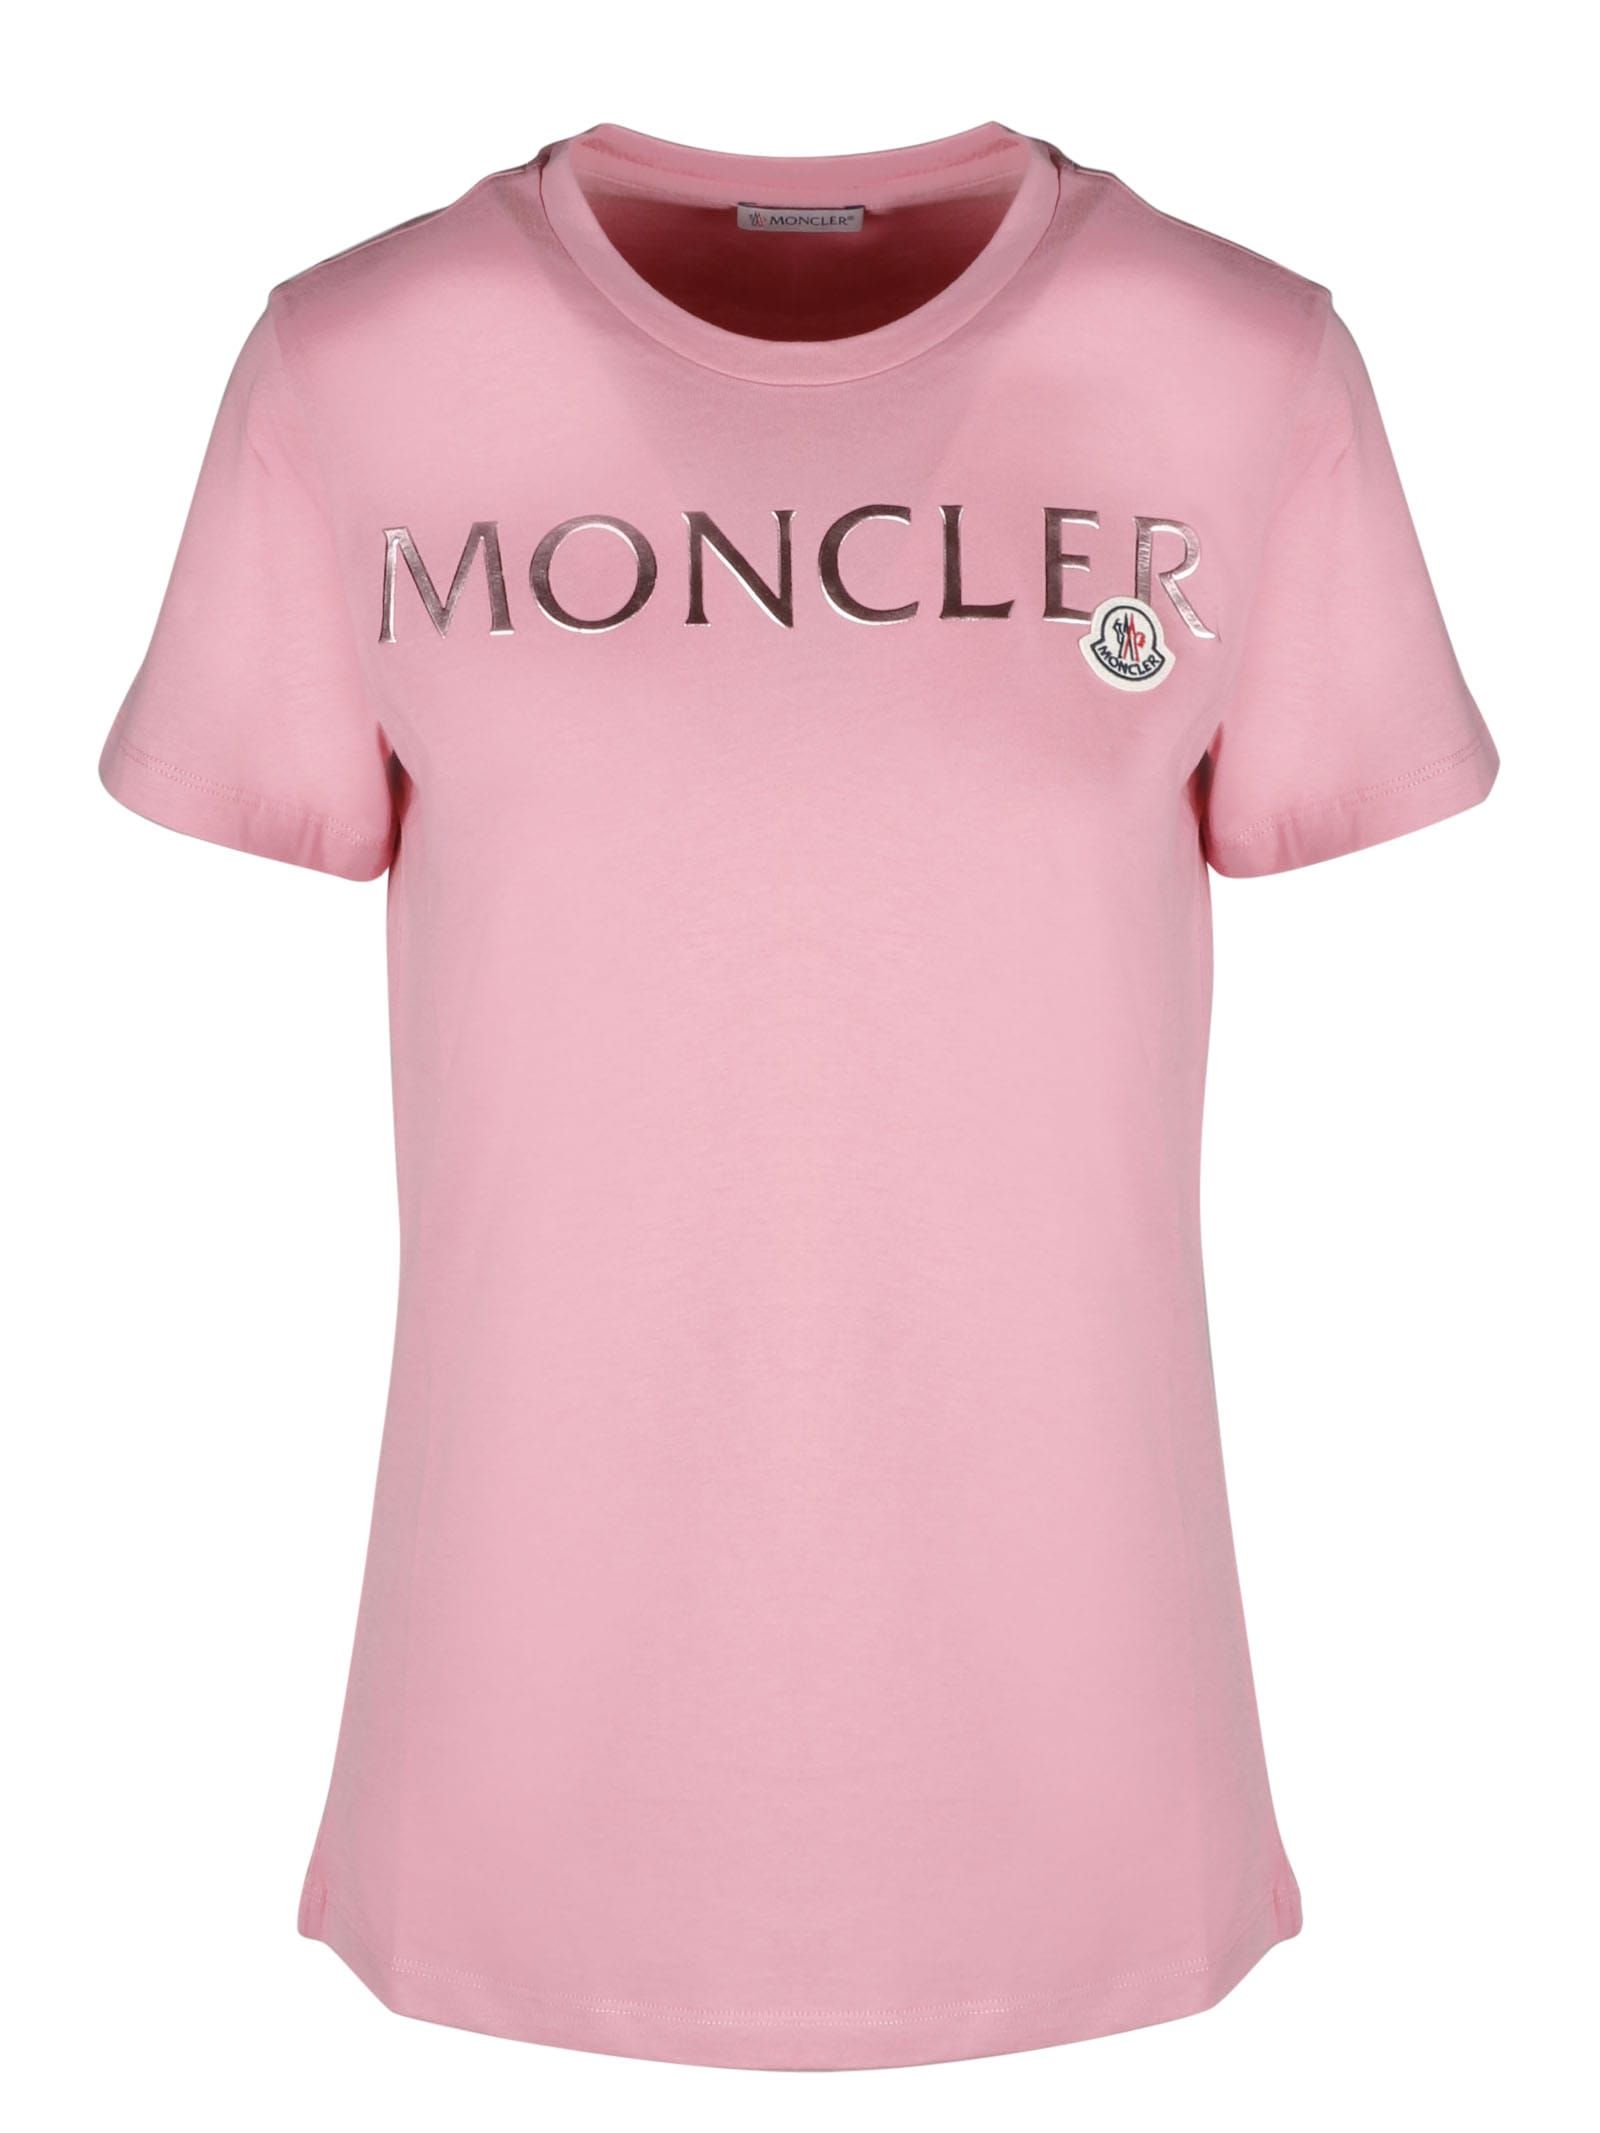 moncler t shirt and shorts